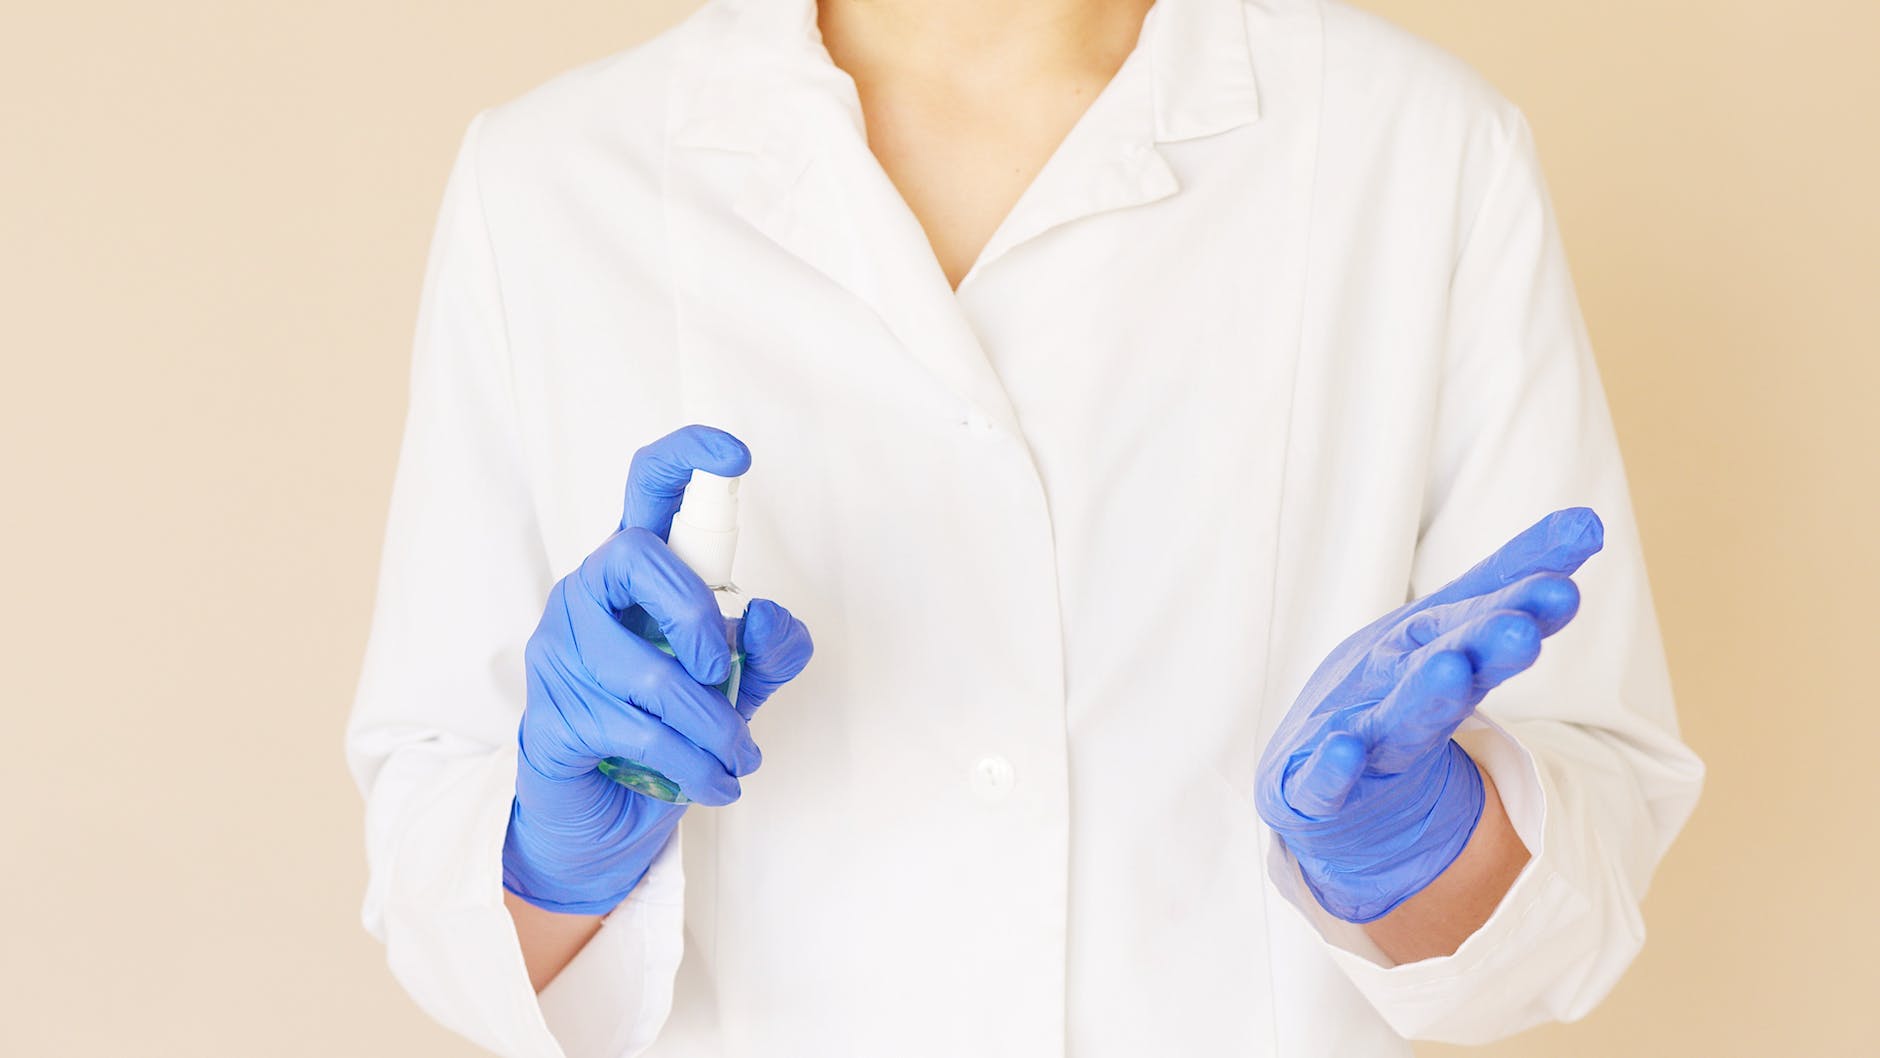 crop medical worker spraying sanitizer over hands in gloves